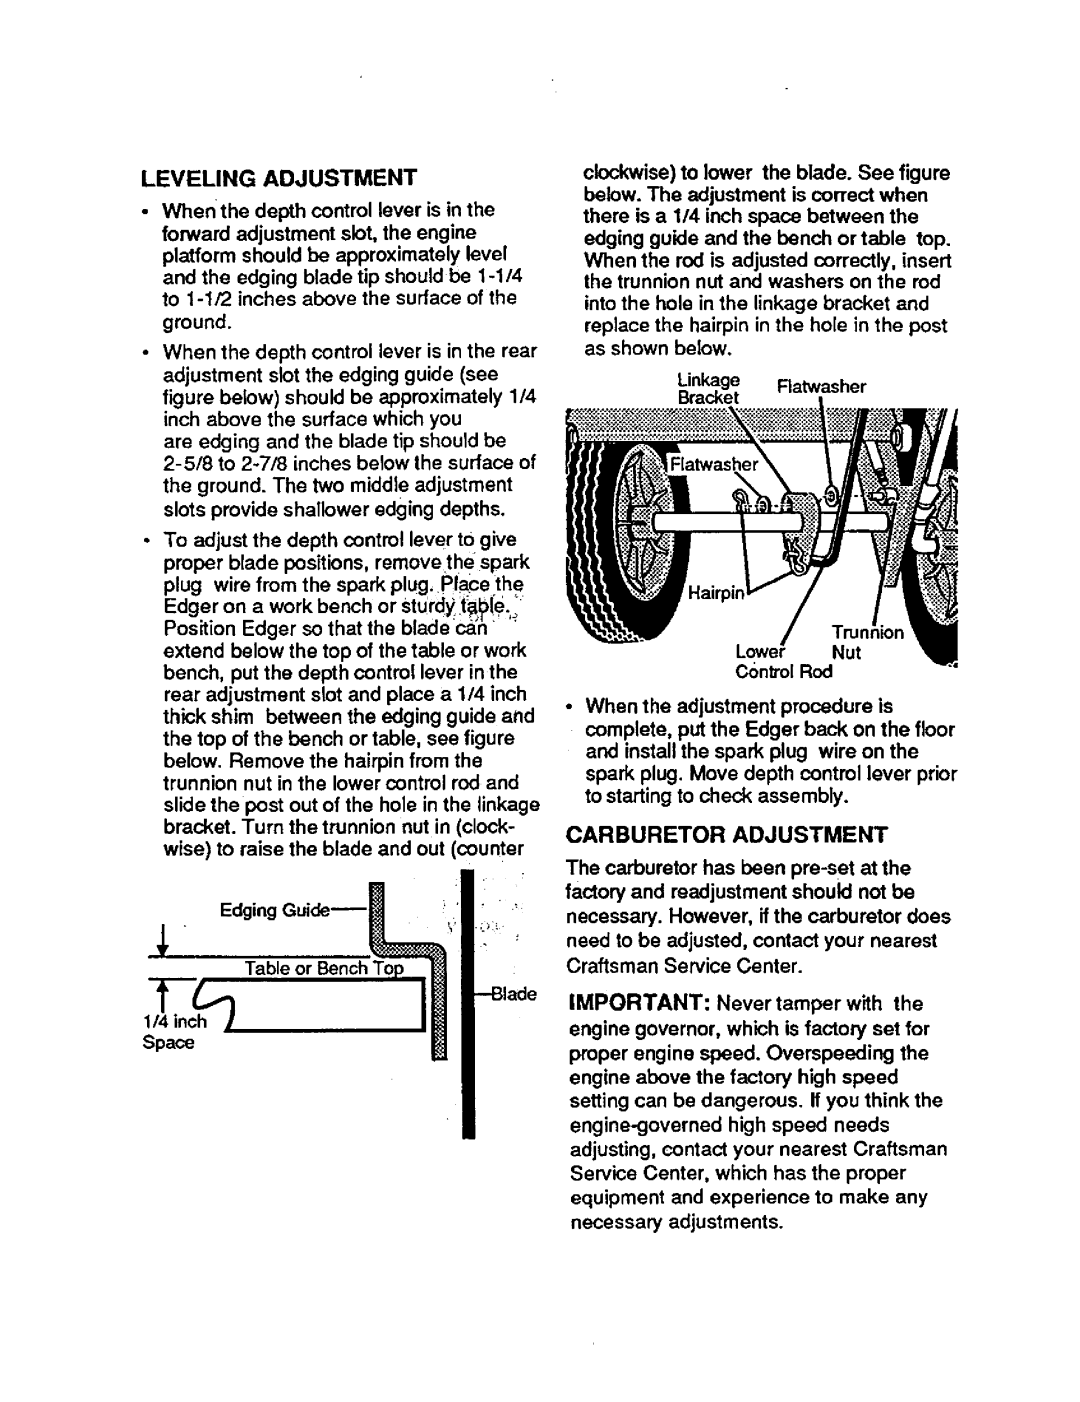 Craftsman 536.7974 operating instructions Leveling Adjustment, Carburetor Adjustment 